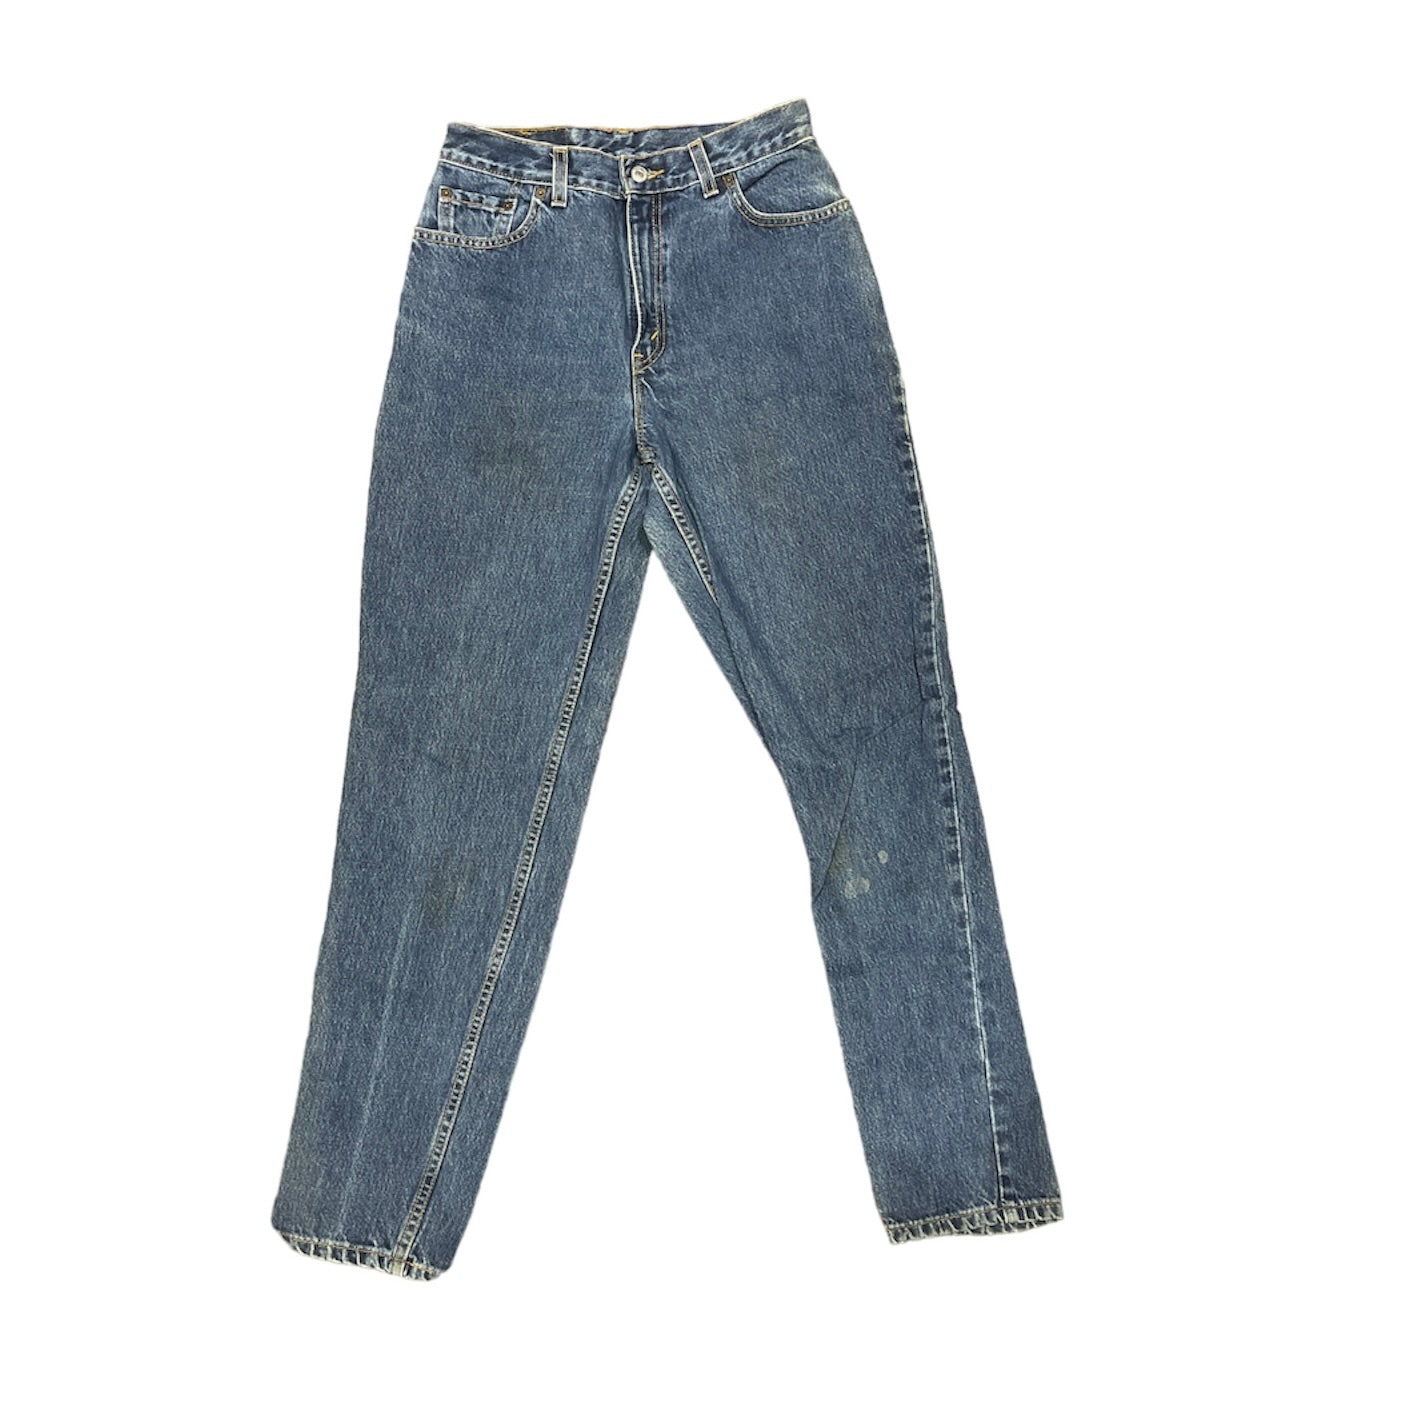 Vintage Levis 550 Blue Jeans (W30)